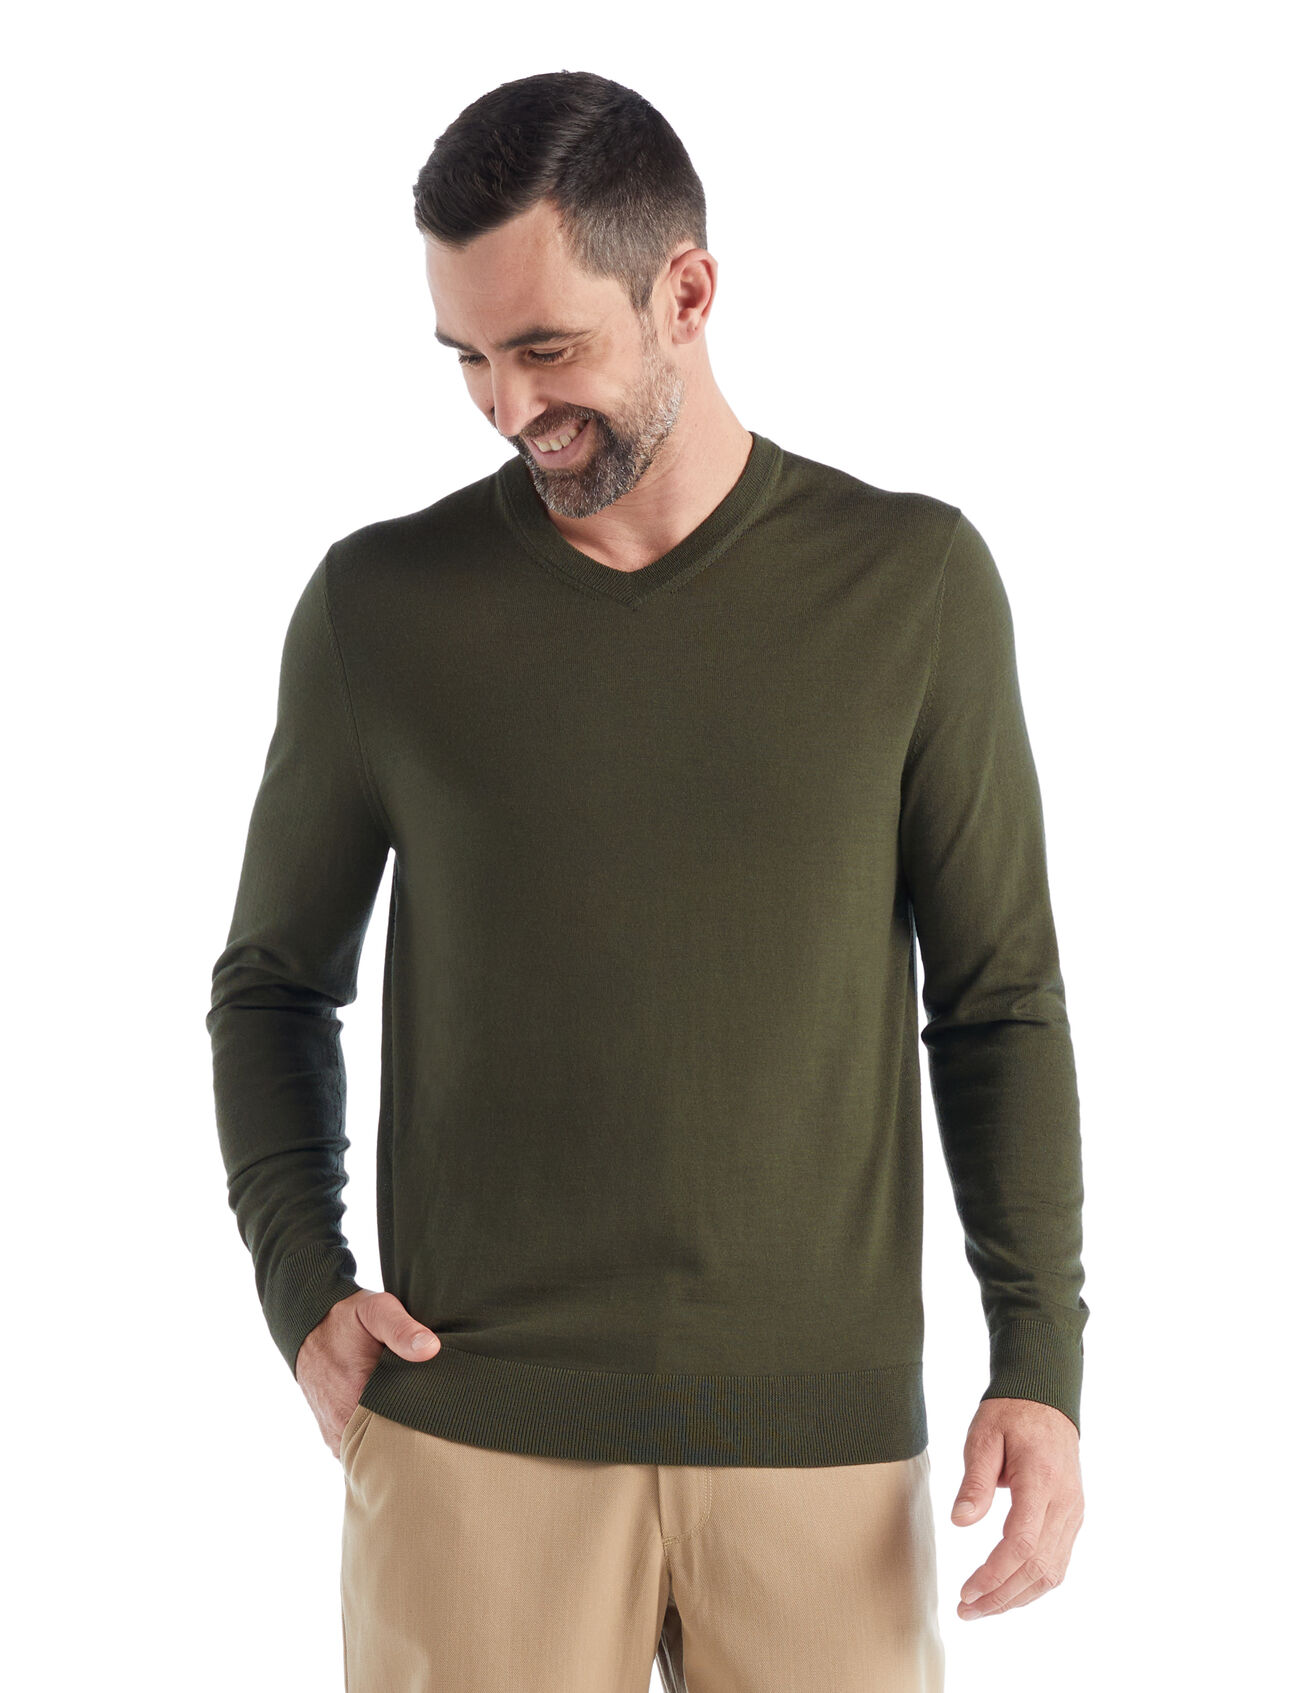 Heren Merino Wilcox trui met lange mouwen van merinowol  De Wilcox is een klassieke, alledaagse trui met lange mouwen en V-hals. Het is gemaakt van ultrafine-gauge merinowol, wat het onvergelijkbaar zacht maakt. De trui is perfect voor dagen waarop je een lichte layer nodig hebt.